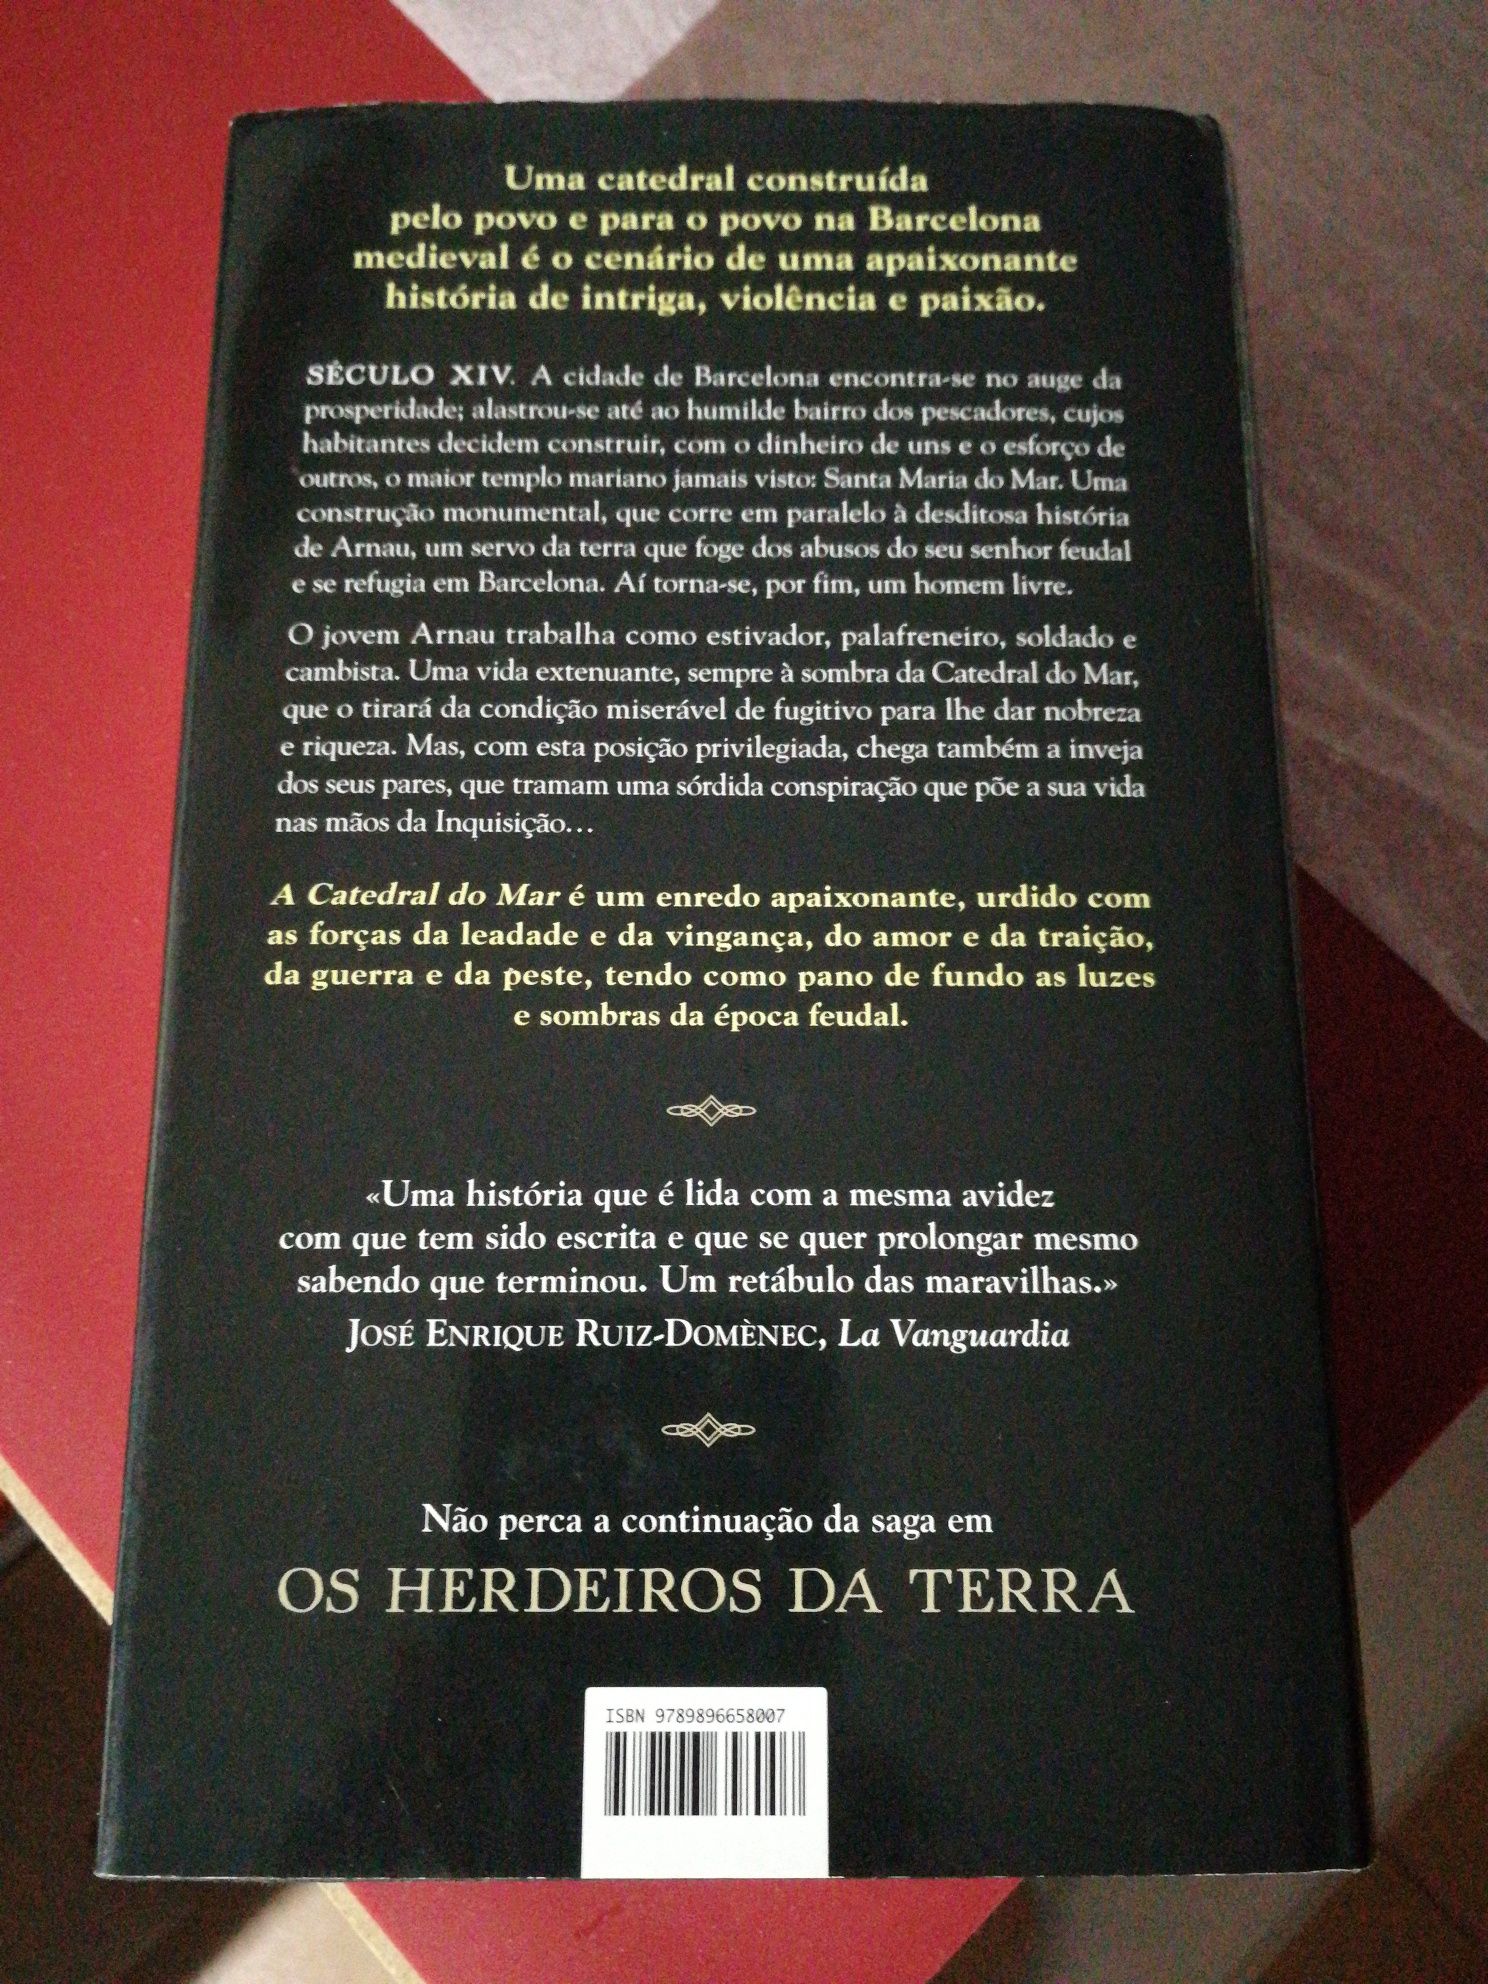 Livro "A Catedral do Mar" de Ildefonso Falcones